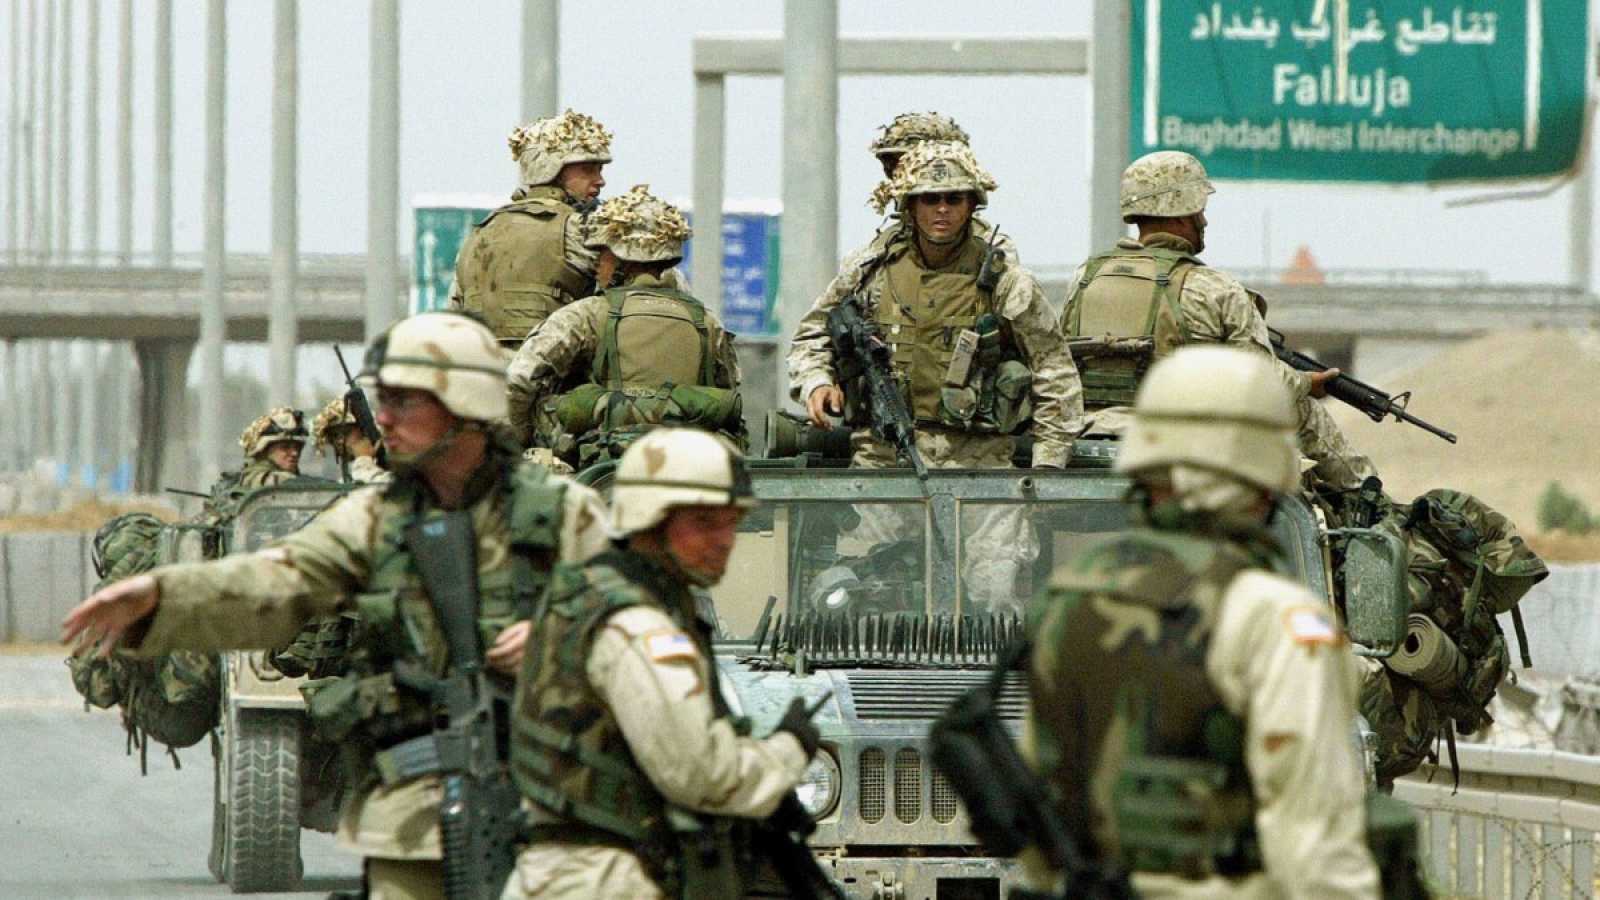 Imagen de archivo de soldados estadounidenses en una carretera de Fallujah, Irak.